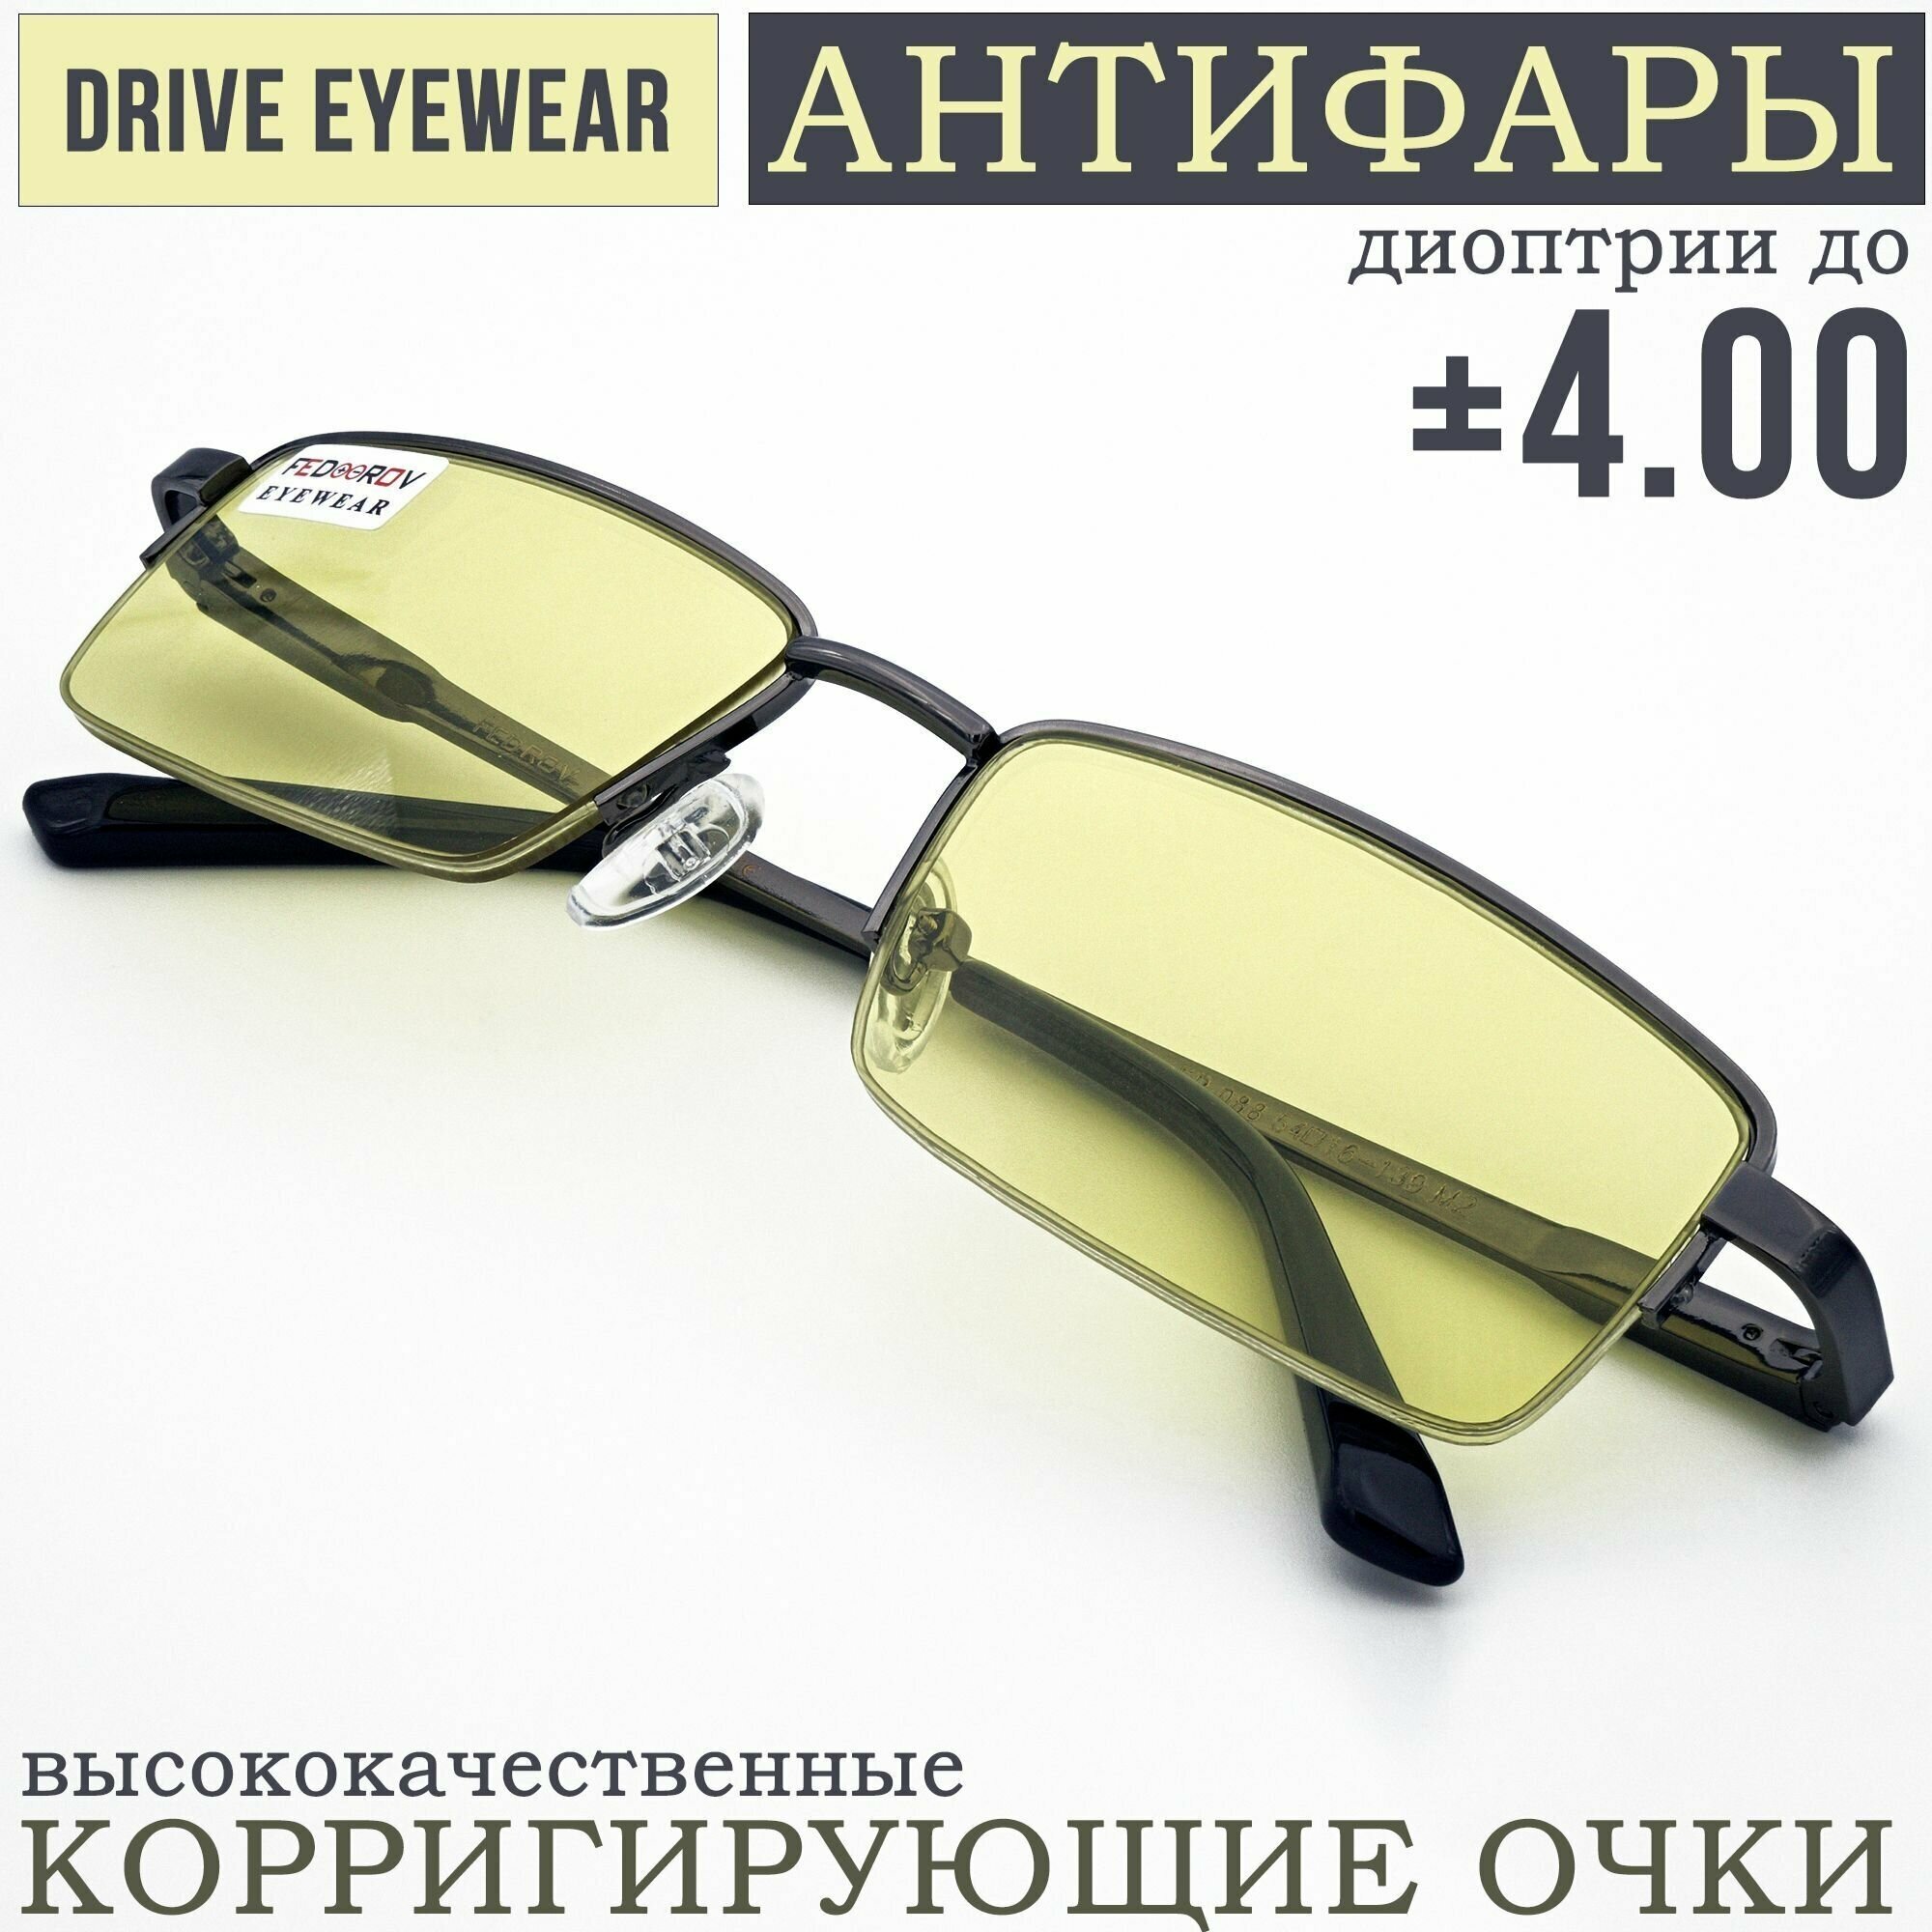 Готовые очки водительские Антифары с диоптриями +2,50